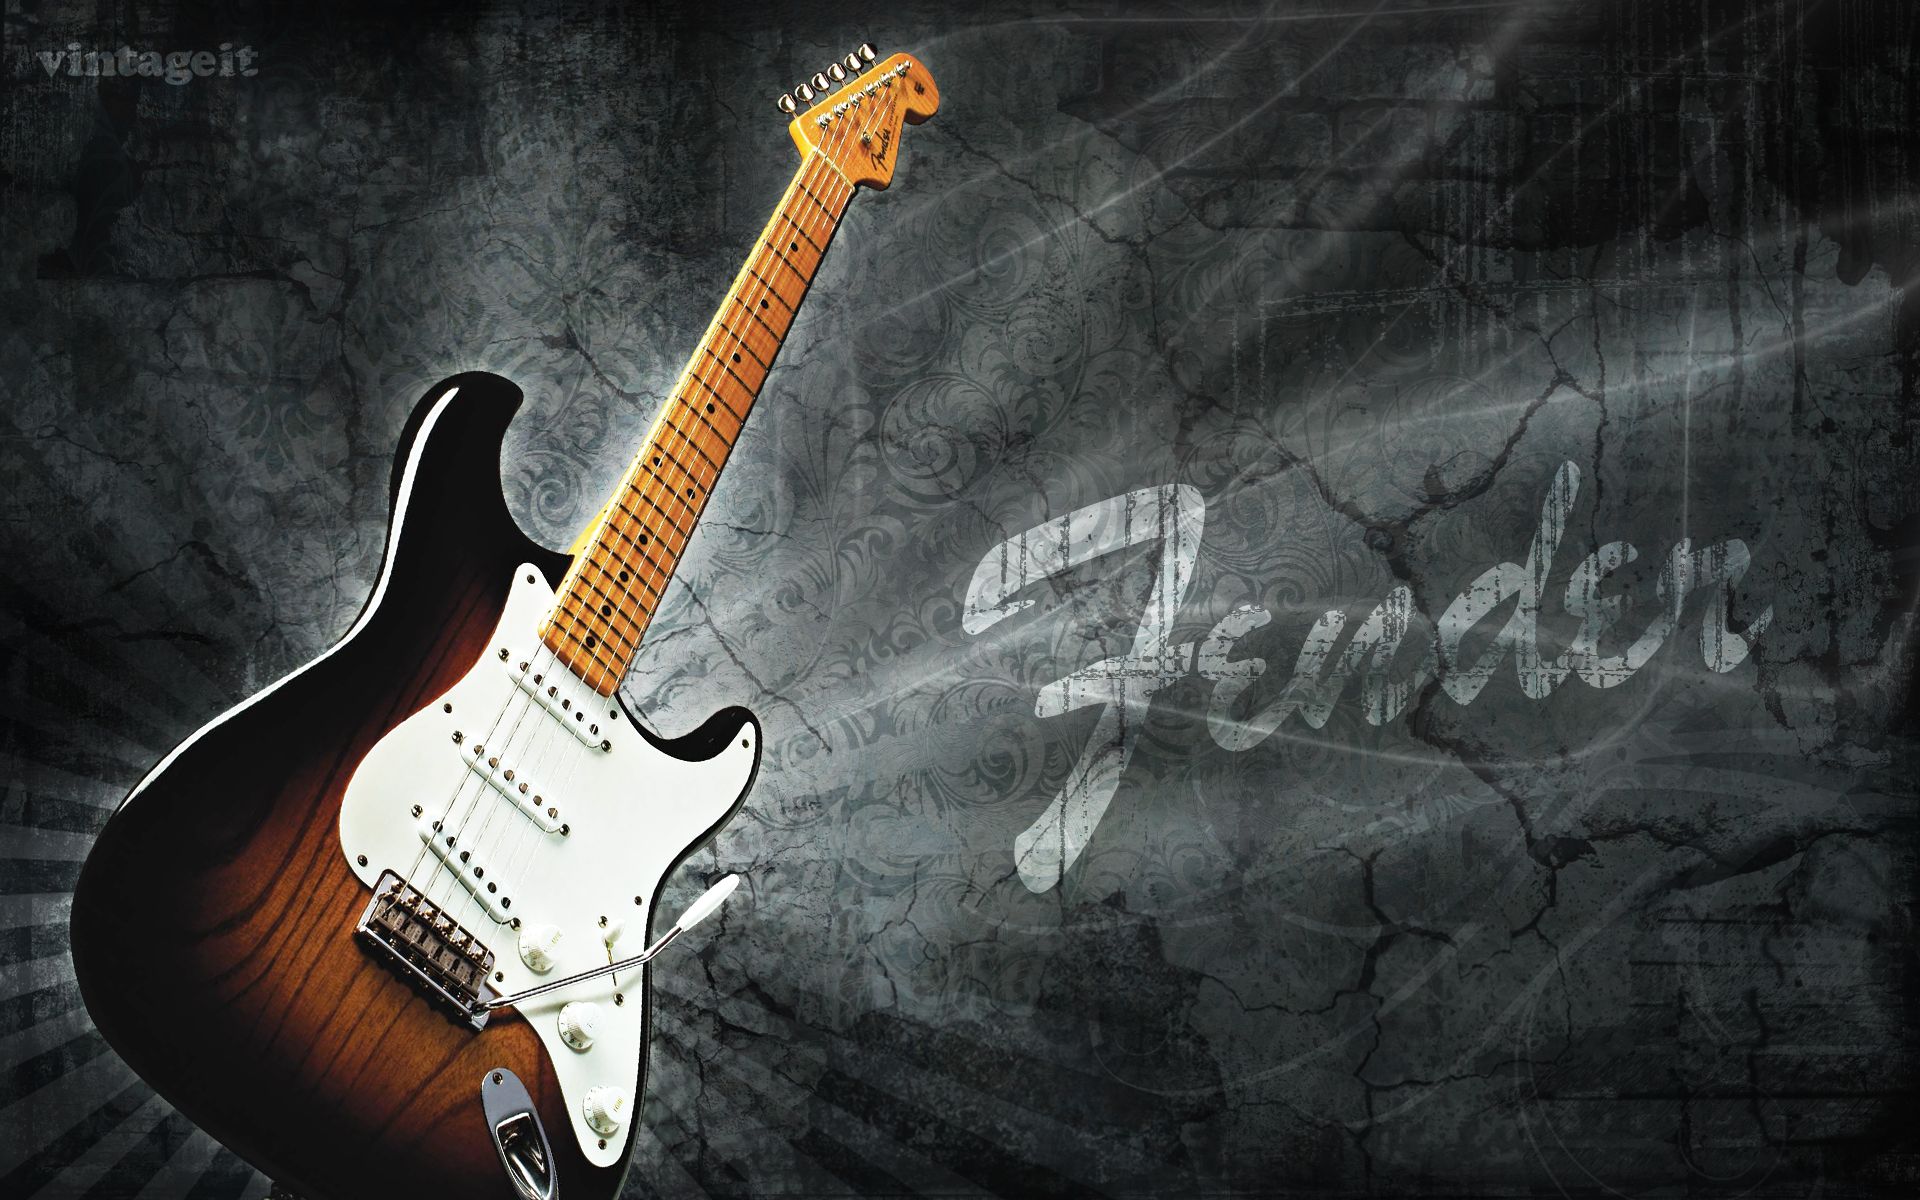 Fender Wallpaper High Resolution